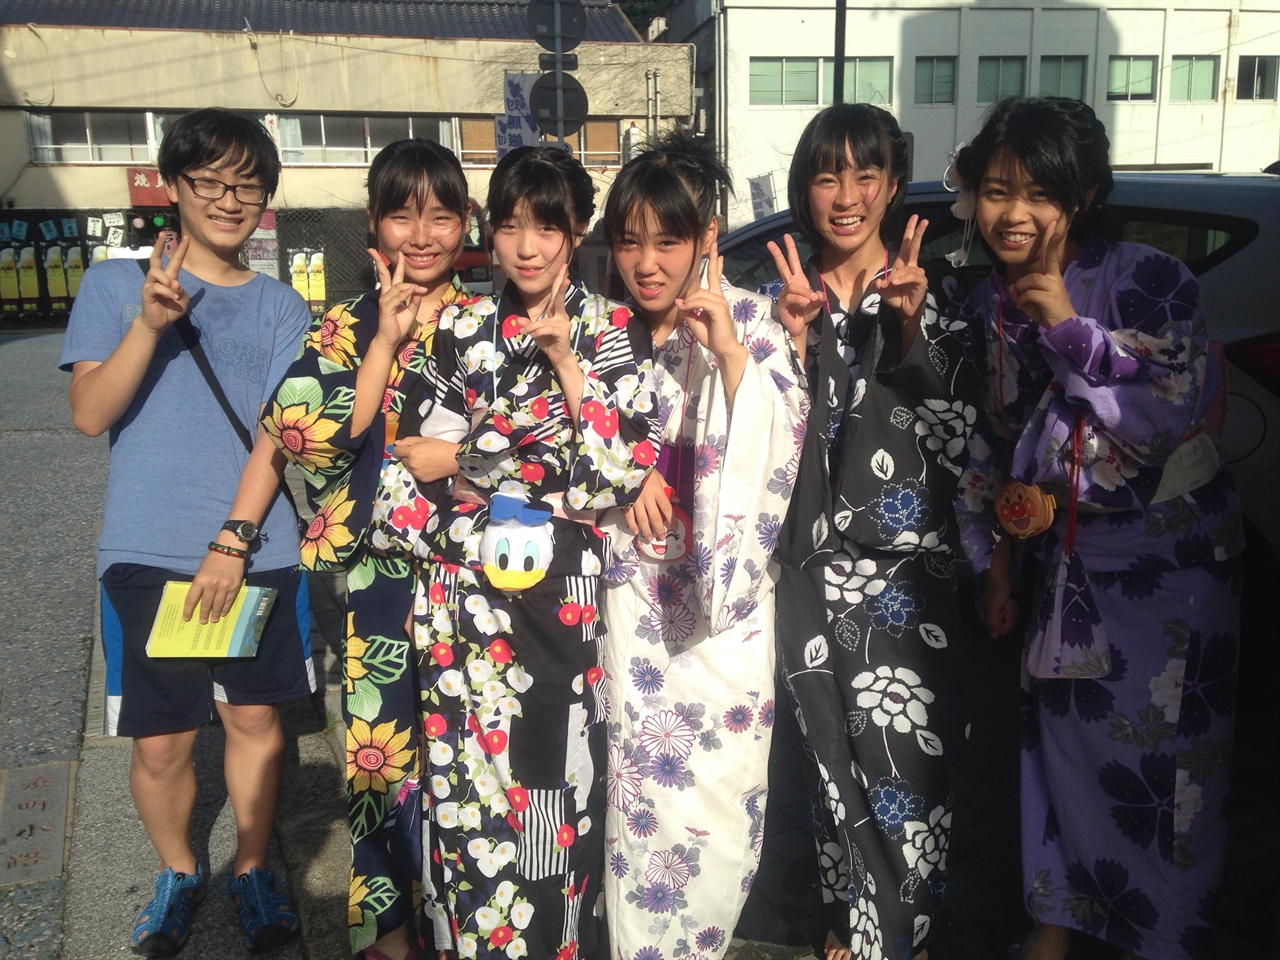 대마도의 남단에 위치한 이즈하라는 축제를 앞둔 모습이었습니다. 조카녀석이 기모노를 입은 여자아이들과 함께 기념촬영을 한 모습